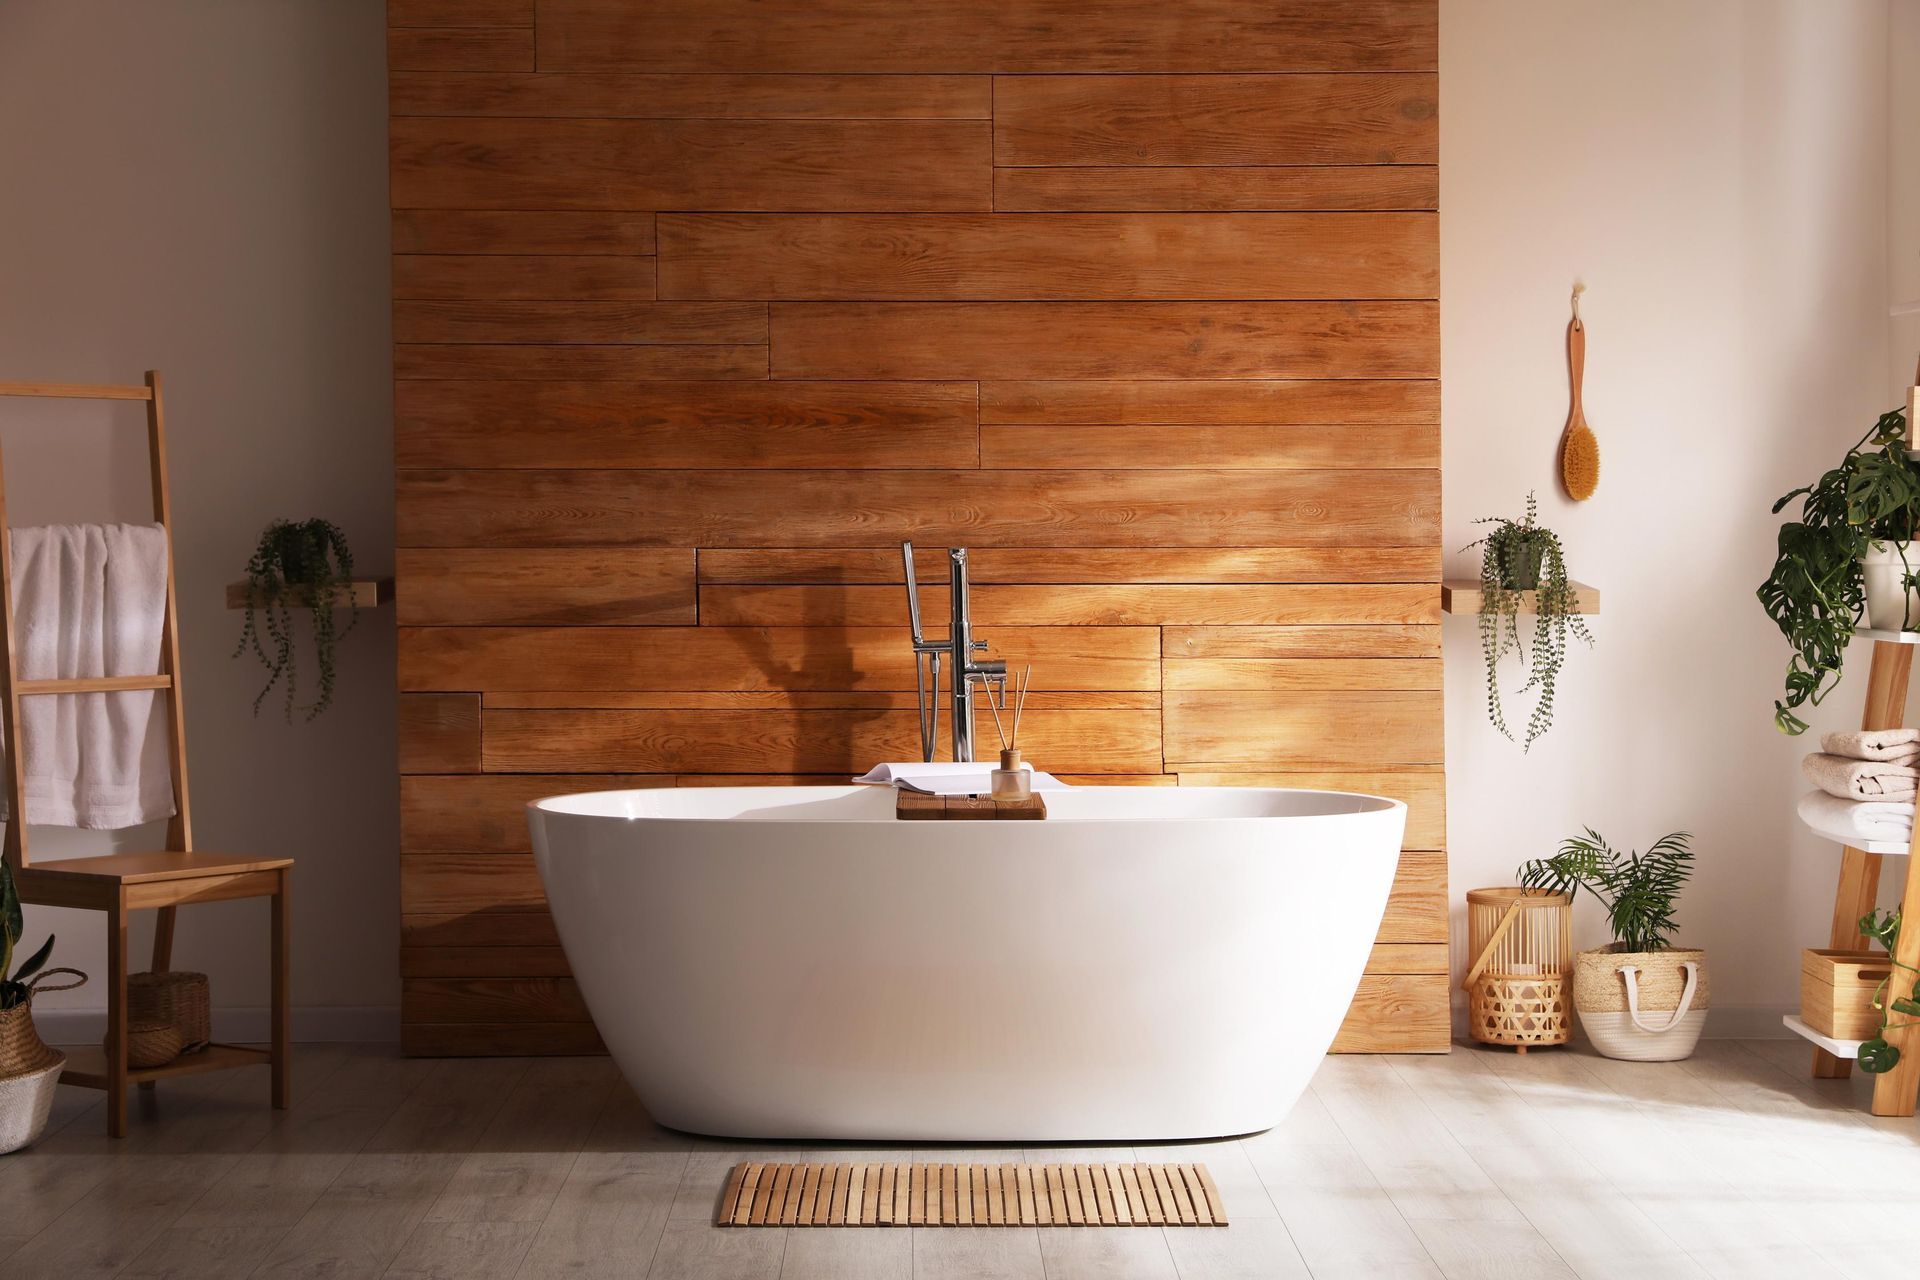 a bathtub in a bathroom with a wooden wall